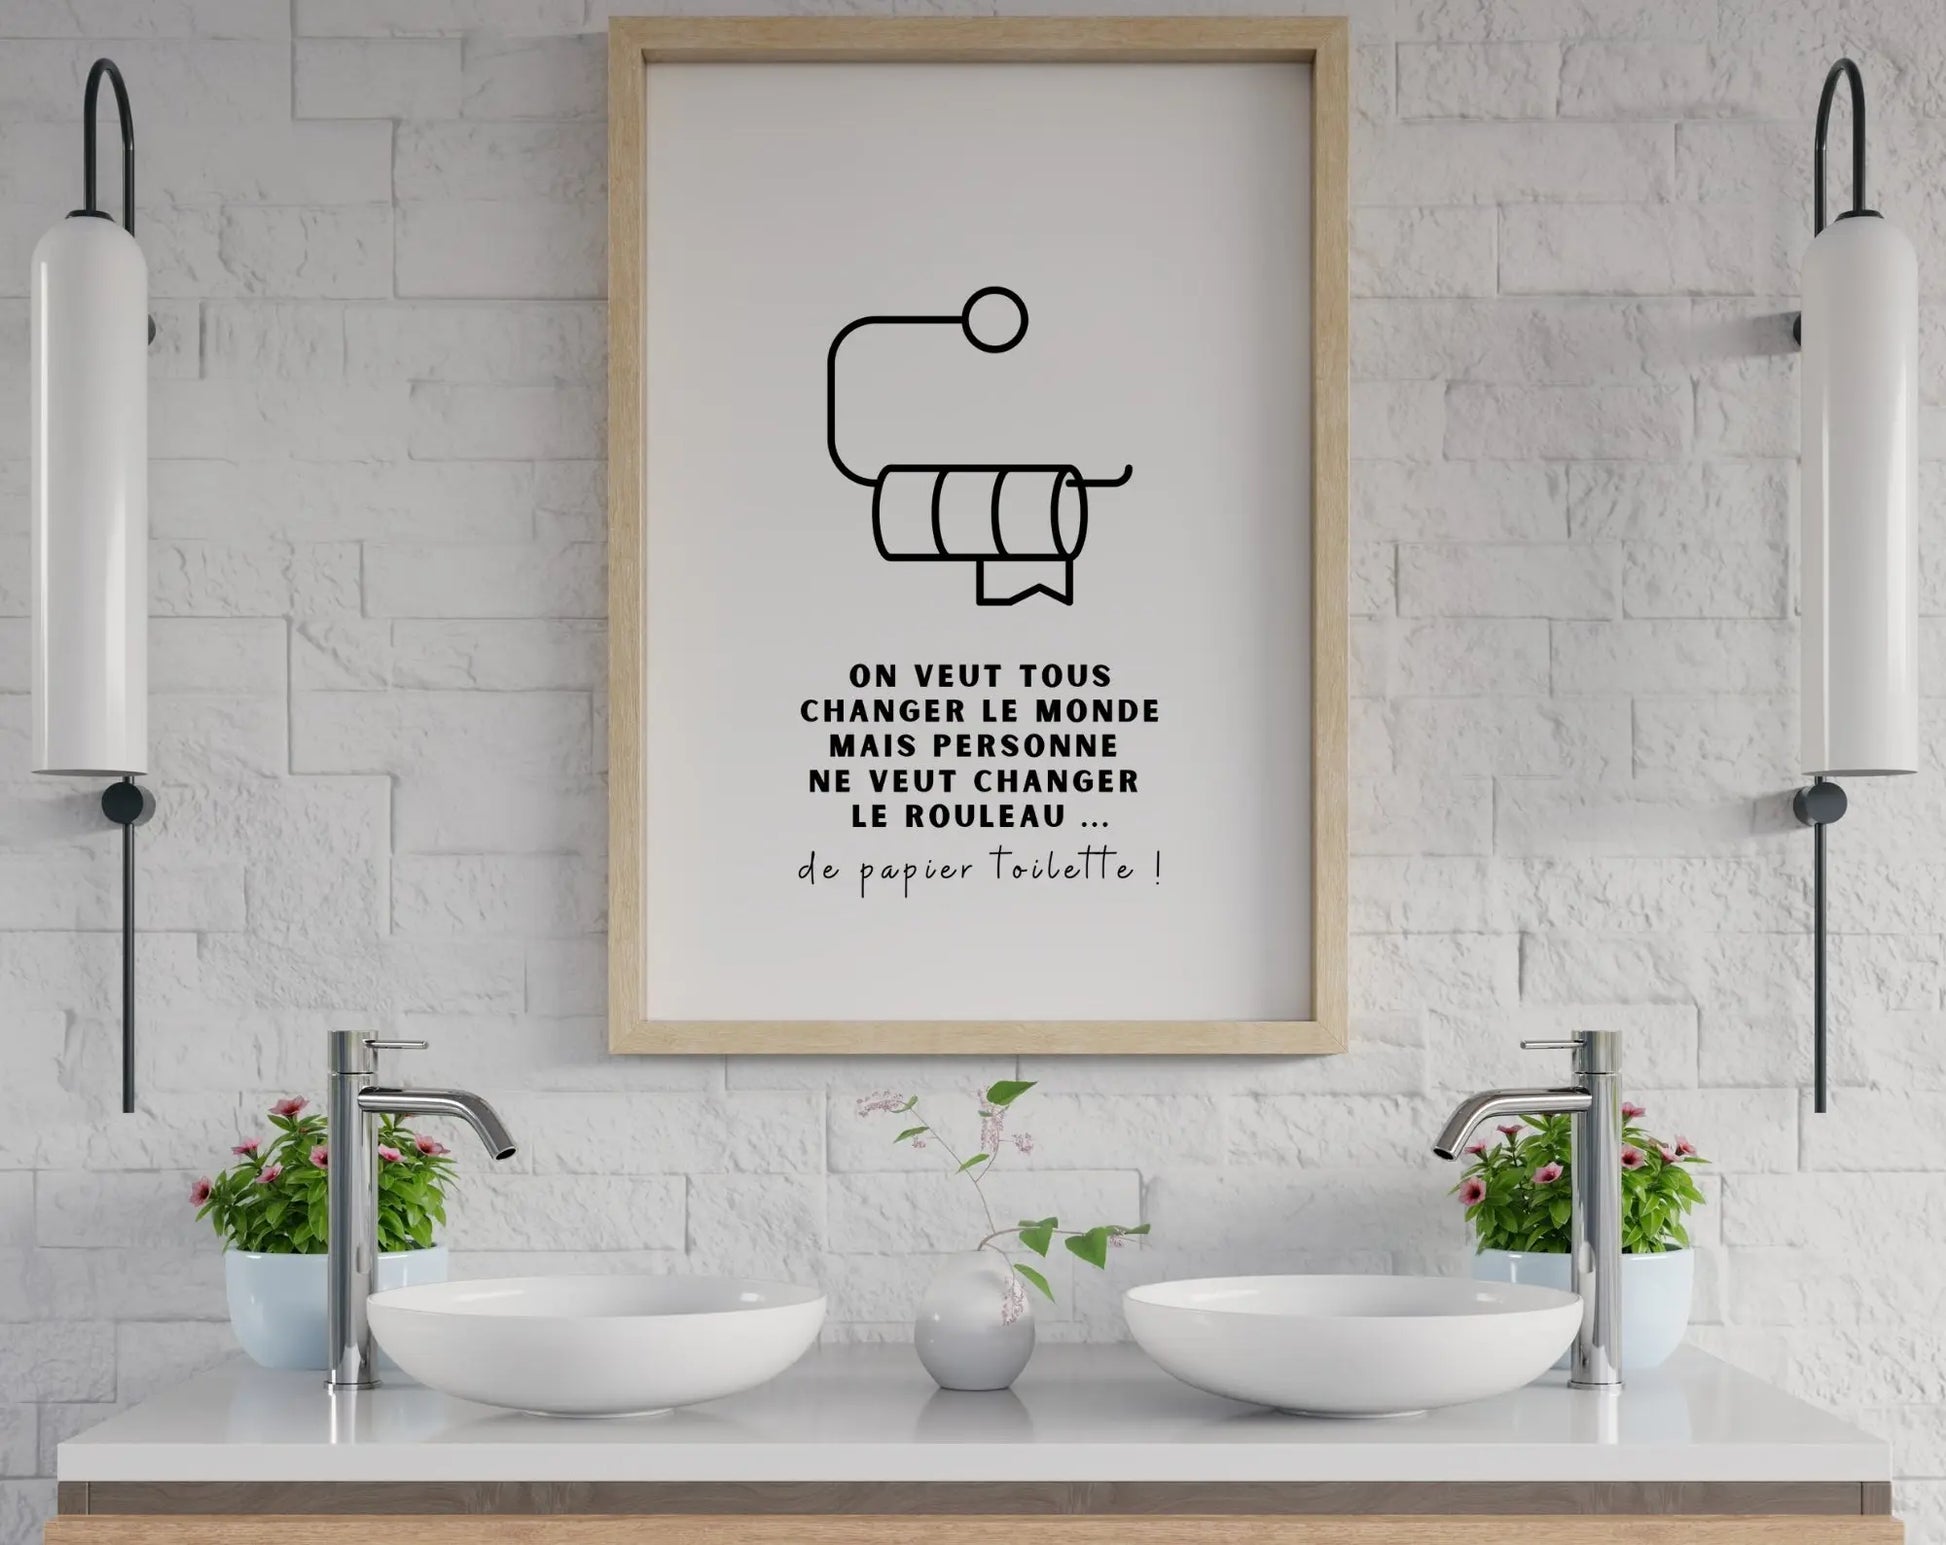 Affiche On veut tous changer le monde mais personne ne veut changer le rouleau de papier toilette - Poster humour WC FLTMfrance